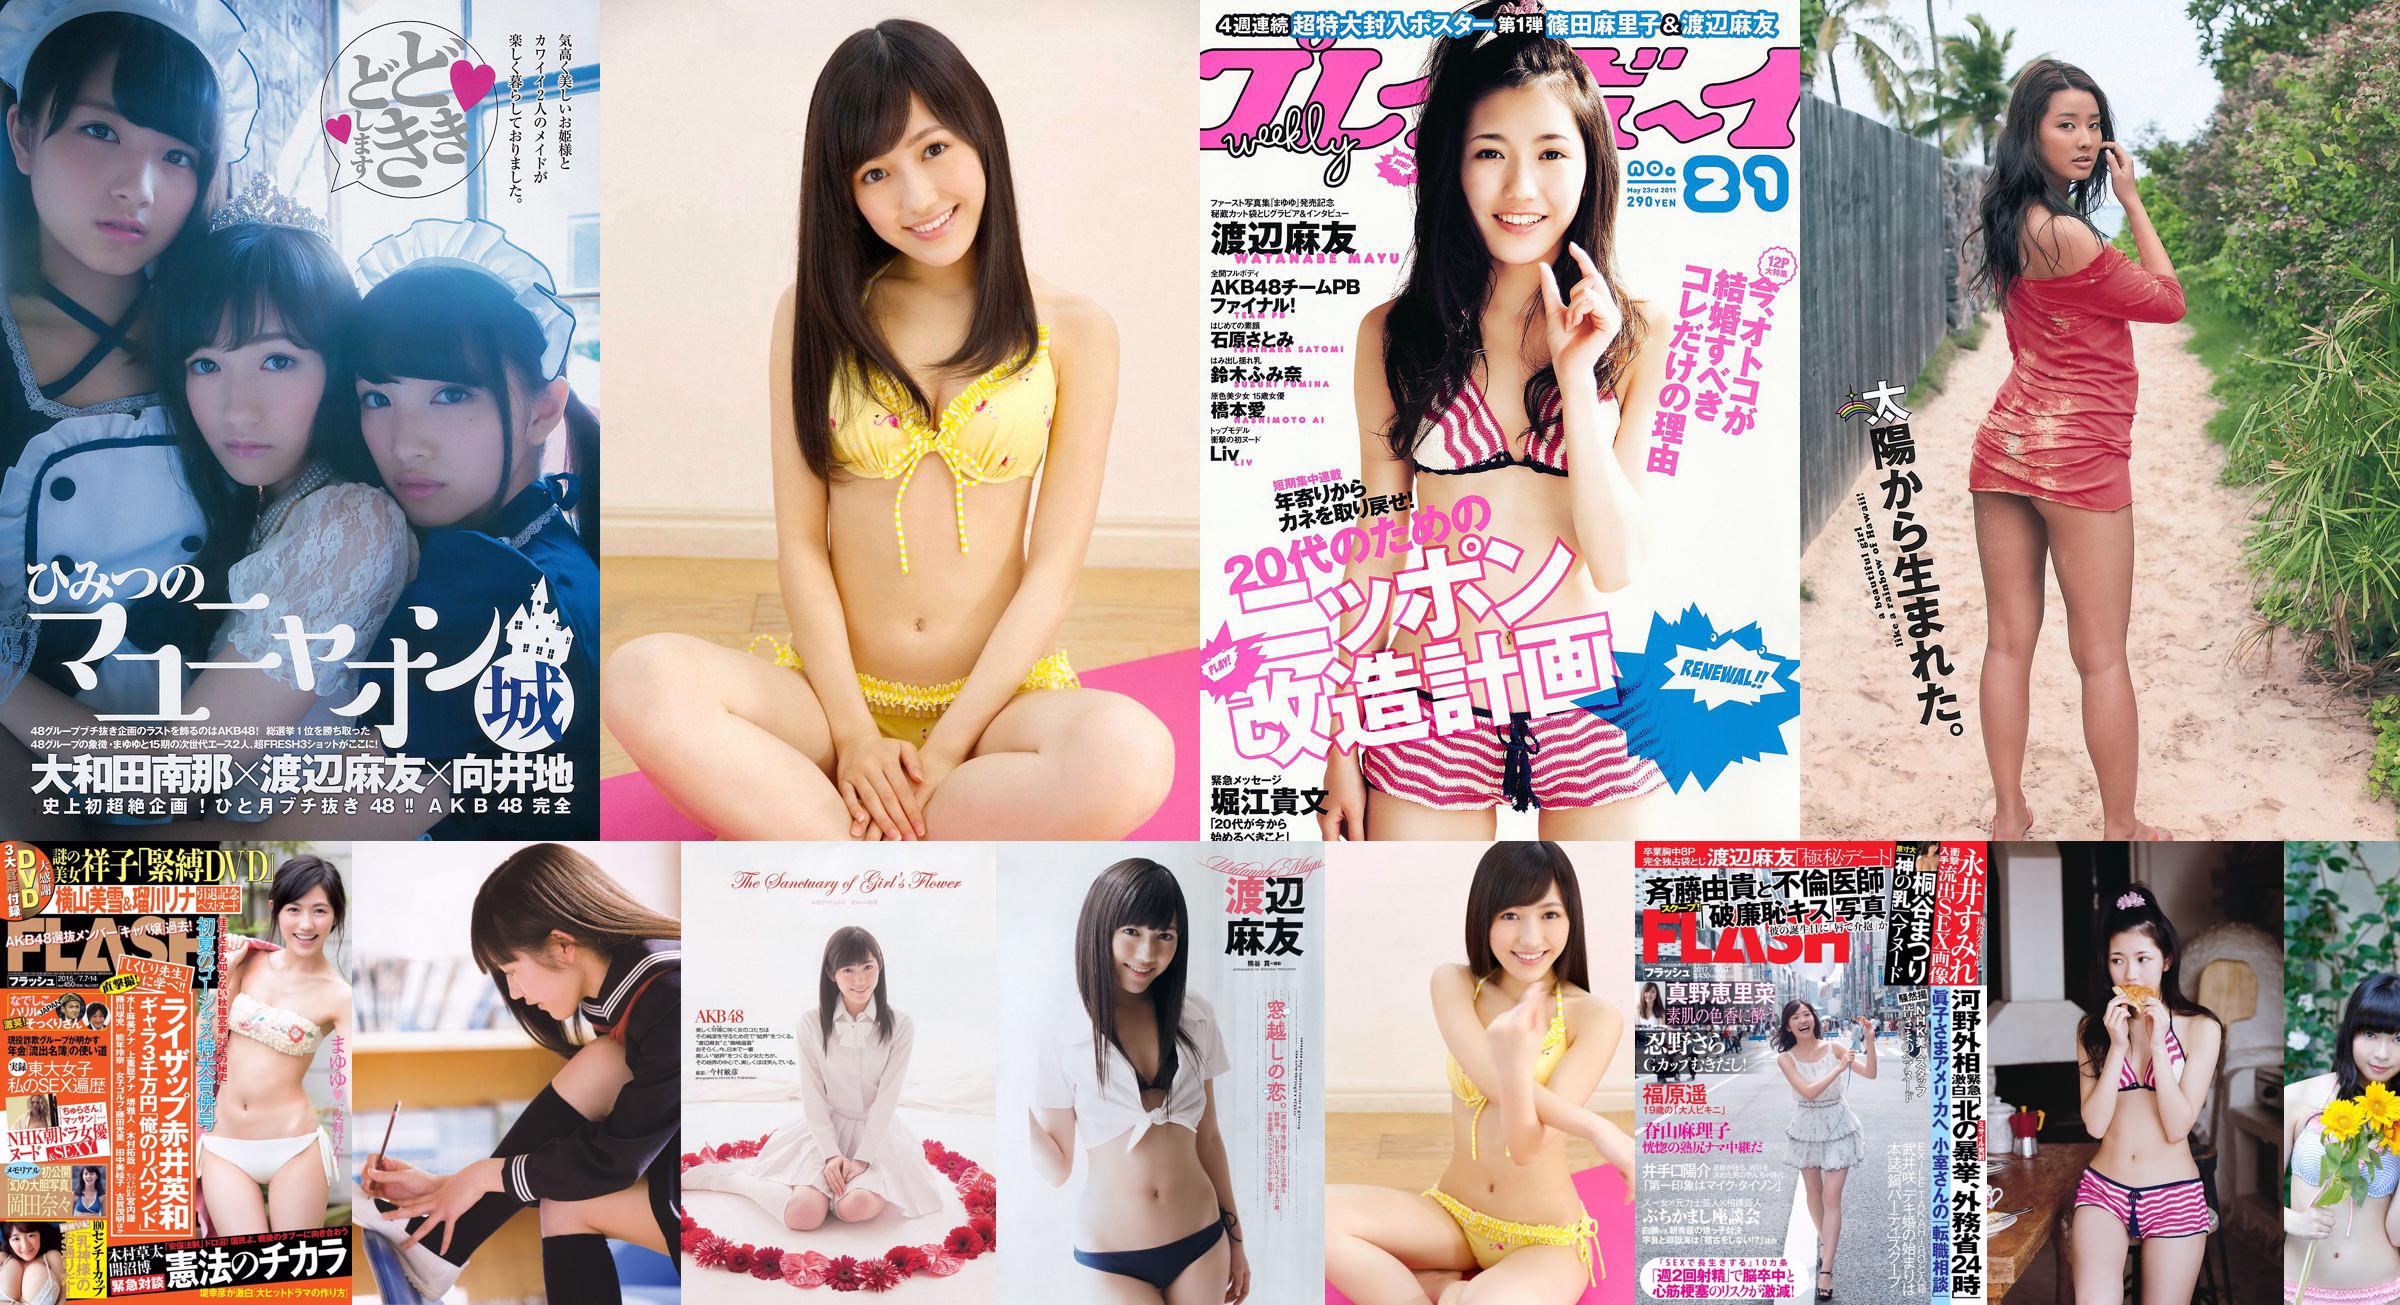 Mayu Watanabe Yuki Morisaki Yuki Wada Ayaka Wada Hanane Fukuda Fumiko Mizuta Yuzuki Aikawa Chika Sakai [Weekly Playboy] 2013 No.17 Photographie No.01d78f Page 1